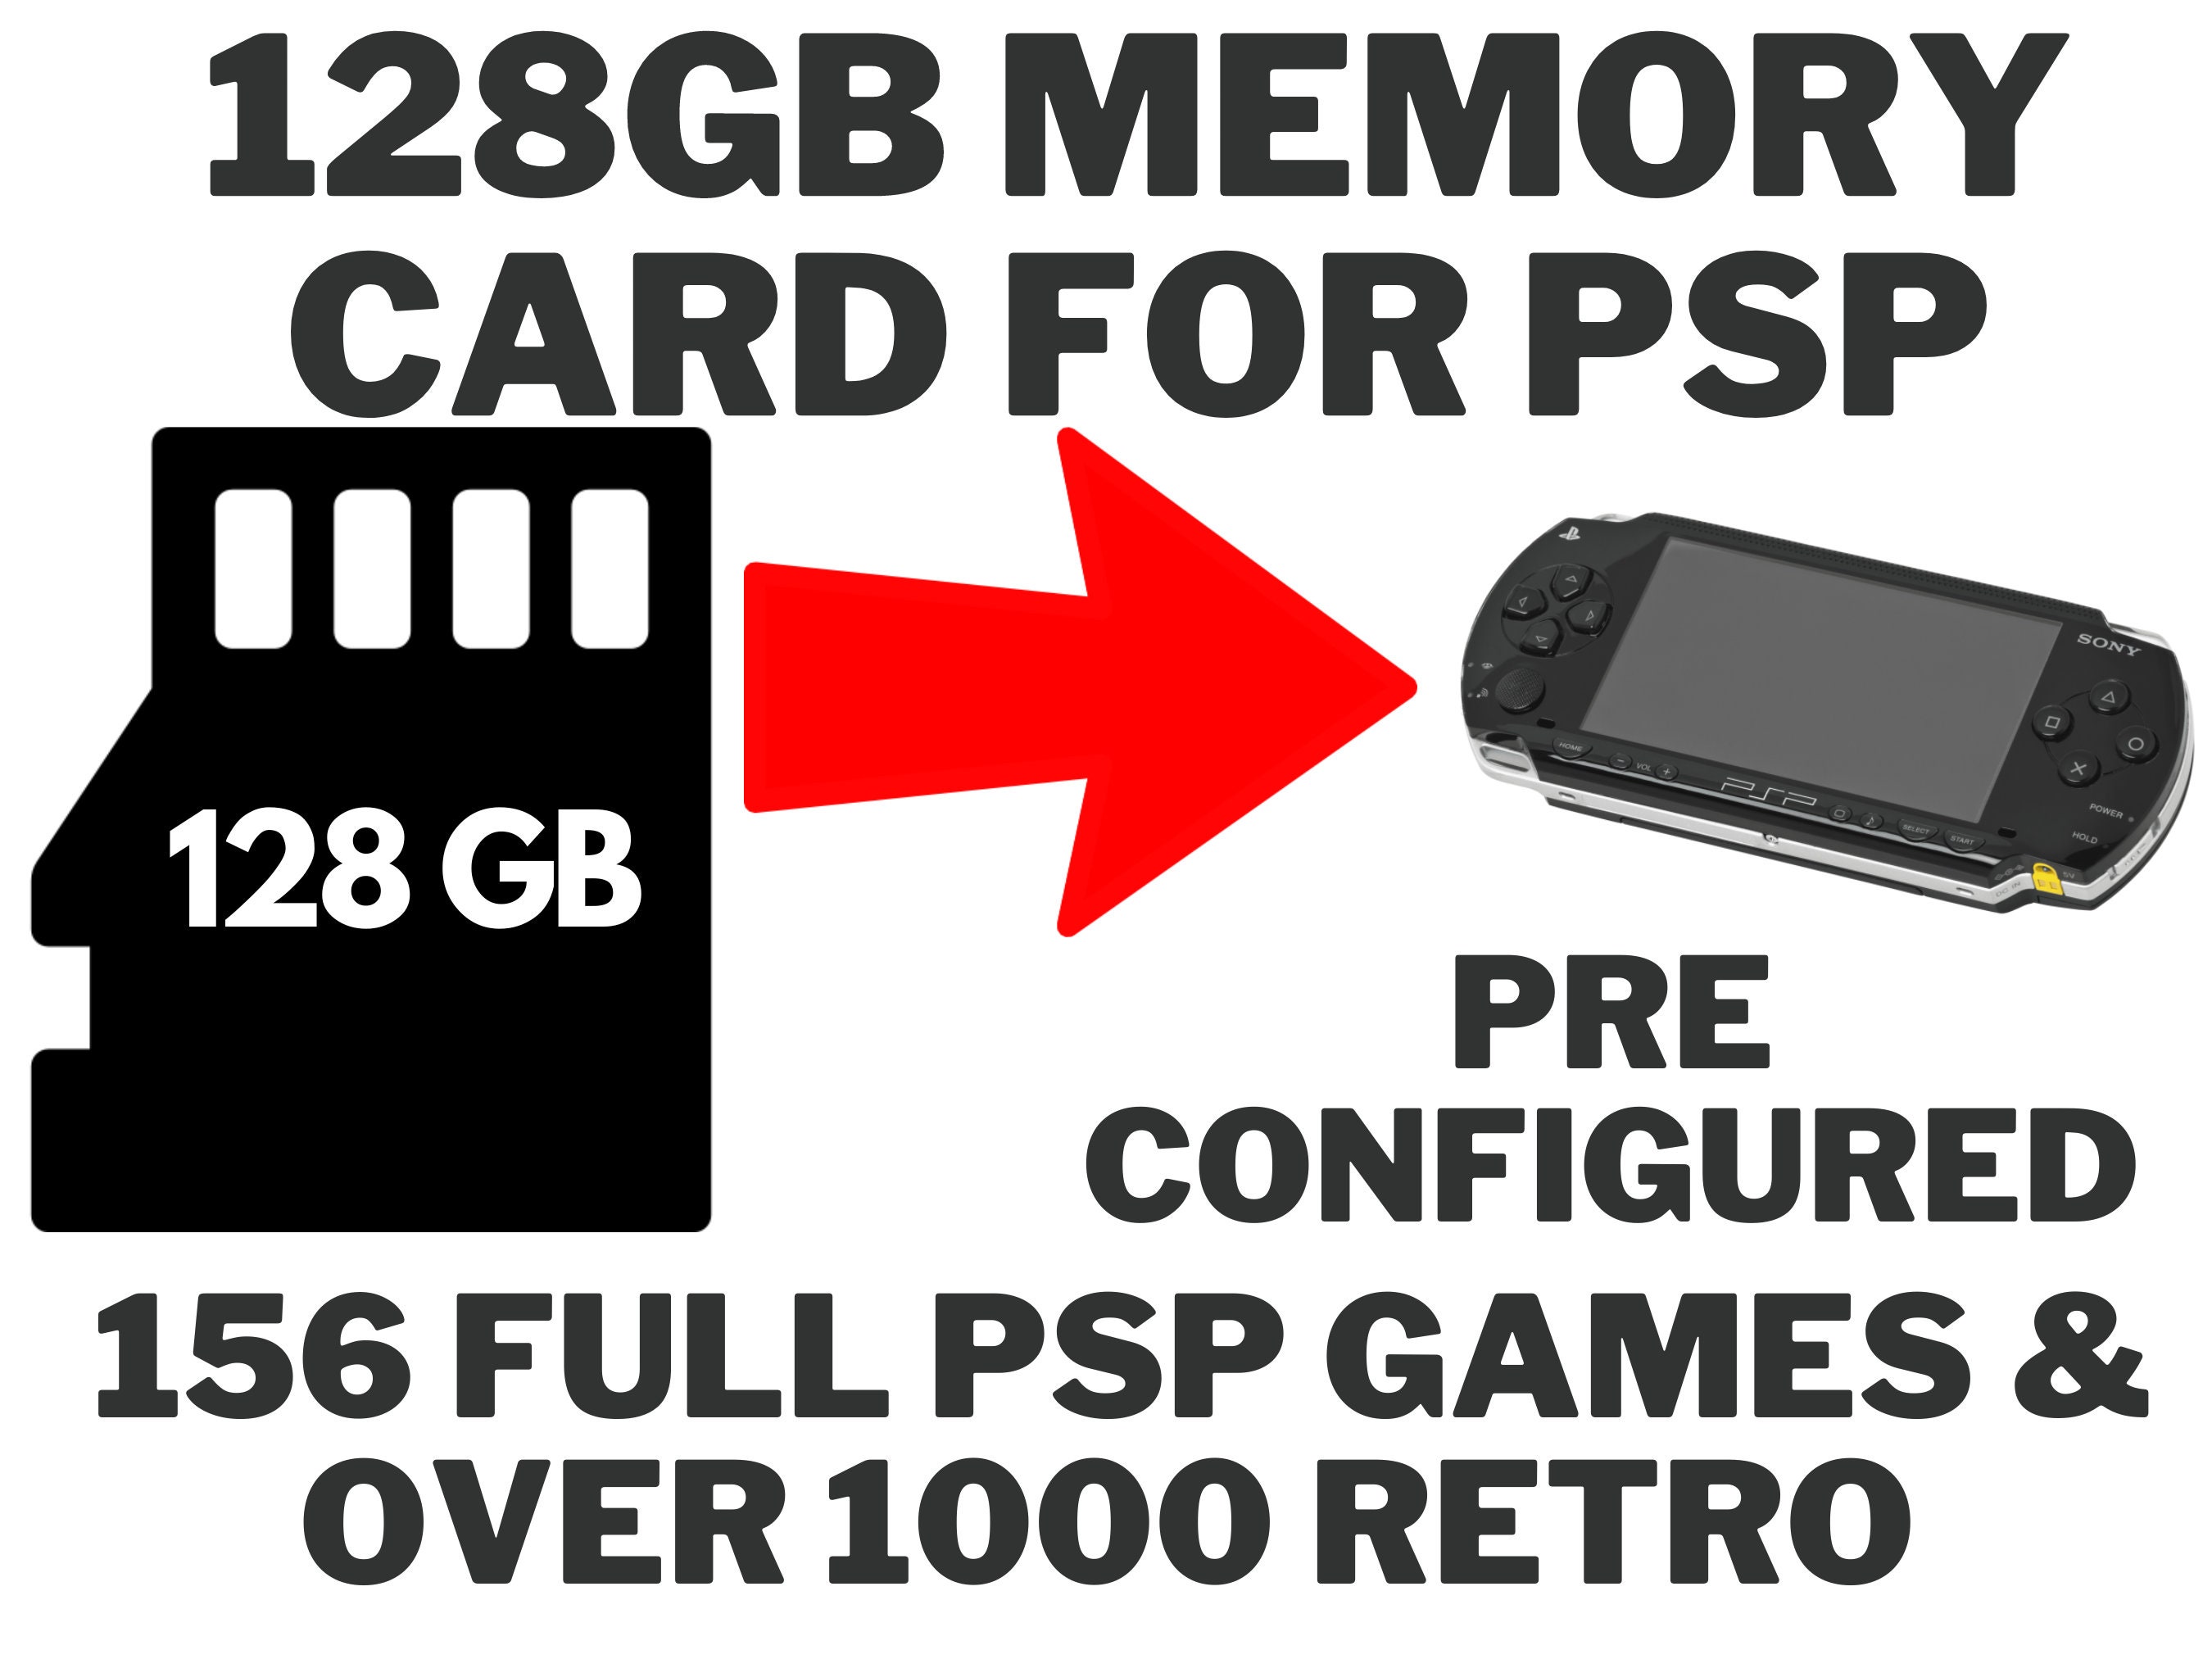 udsættelse opretholde Derfor 128GB Fully Loaded Memory Card for PSP Consoles - Etsy